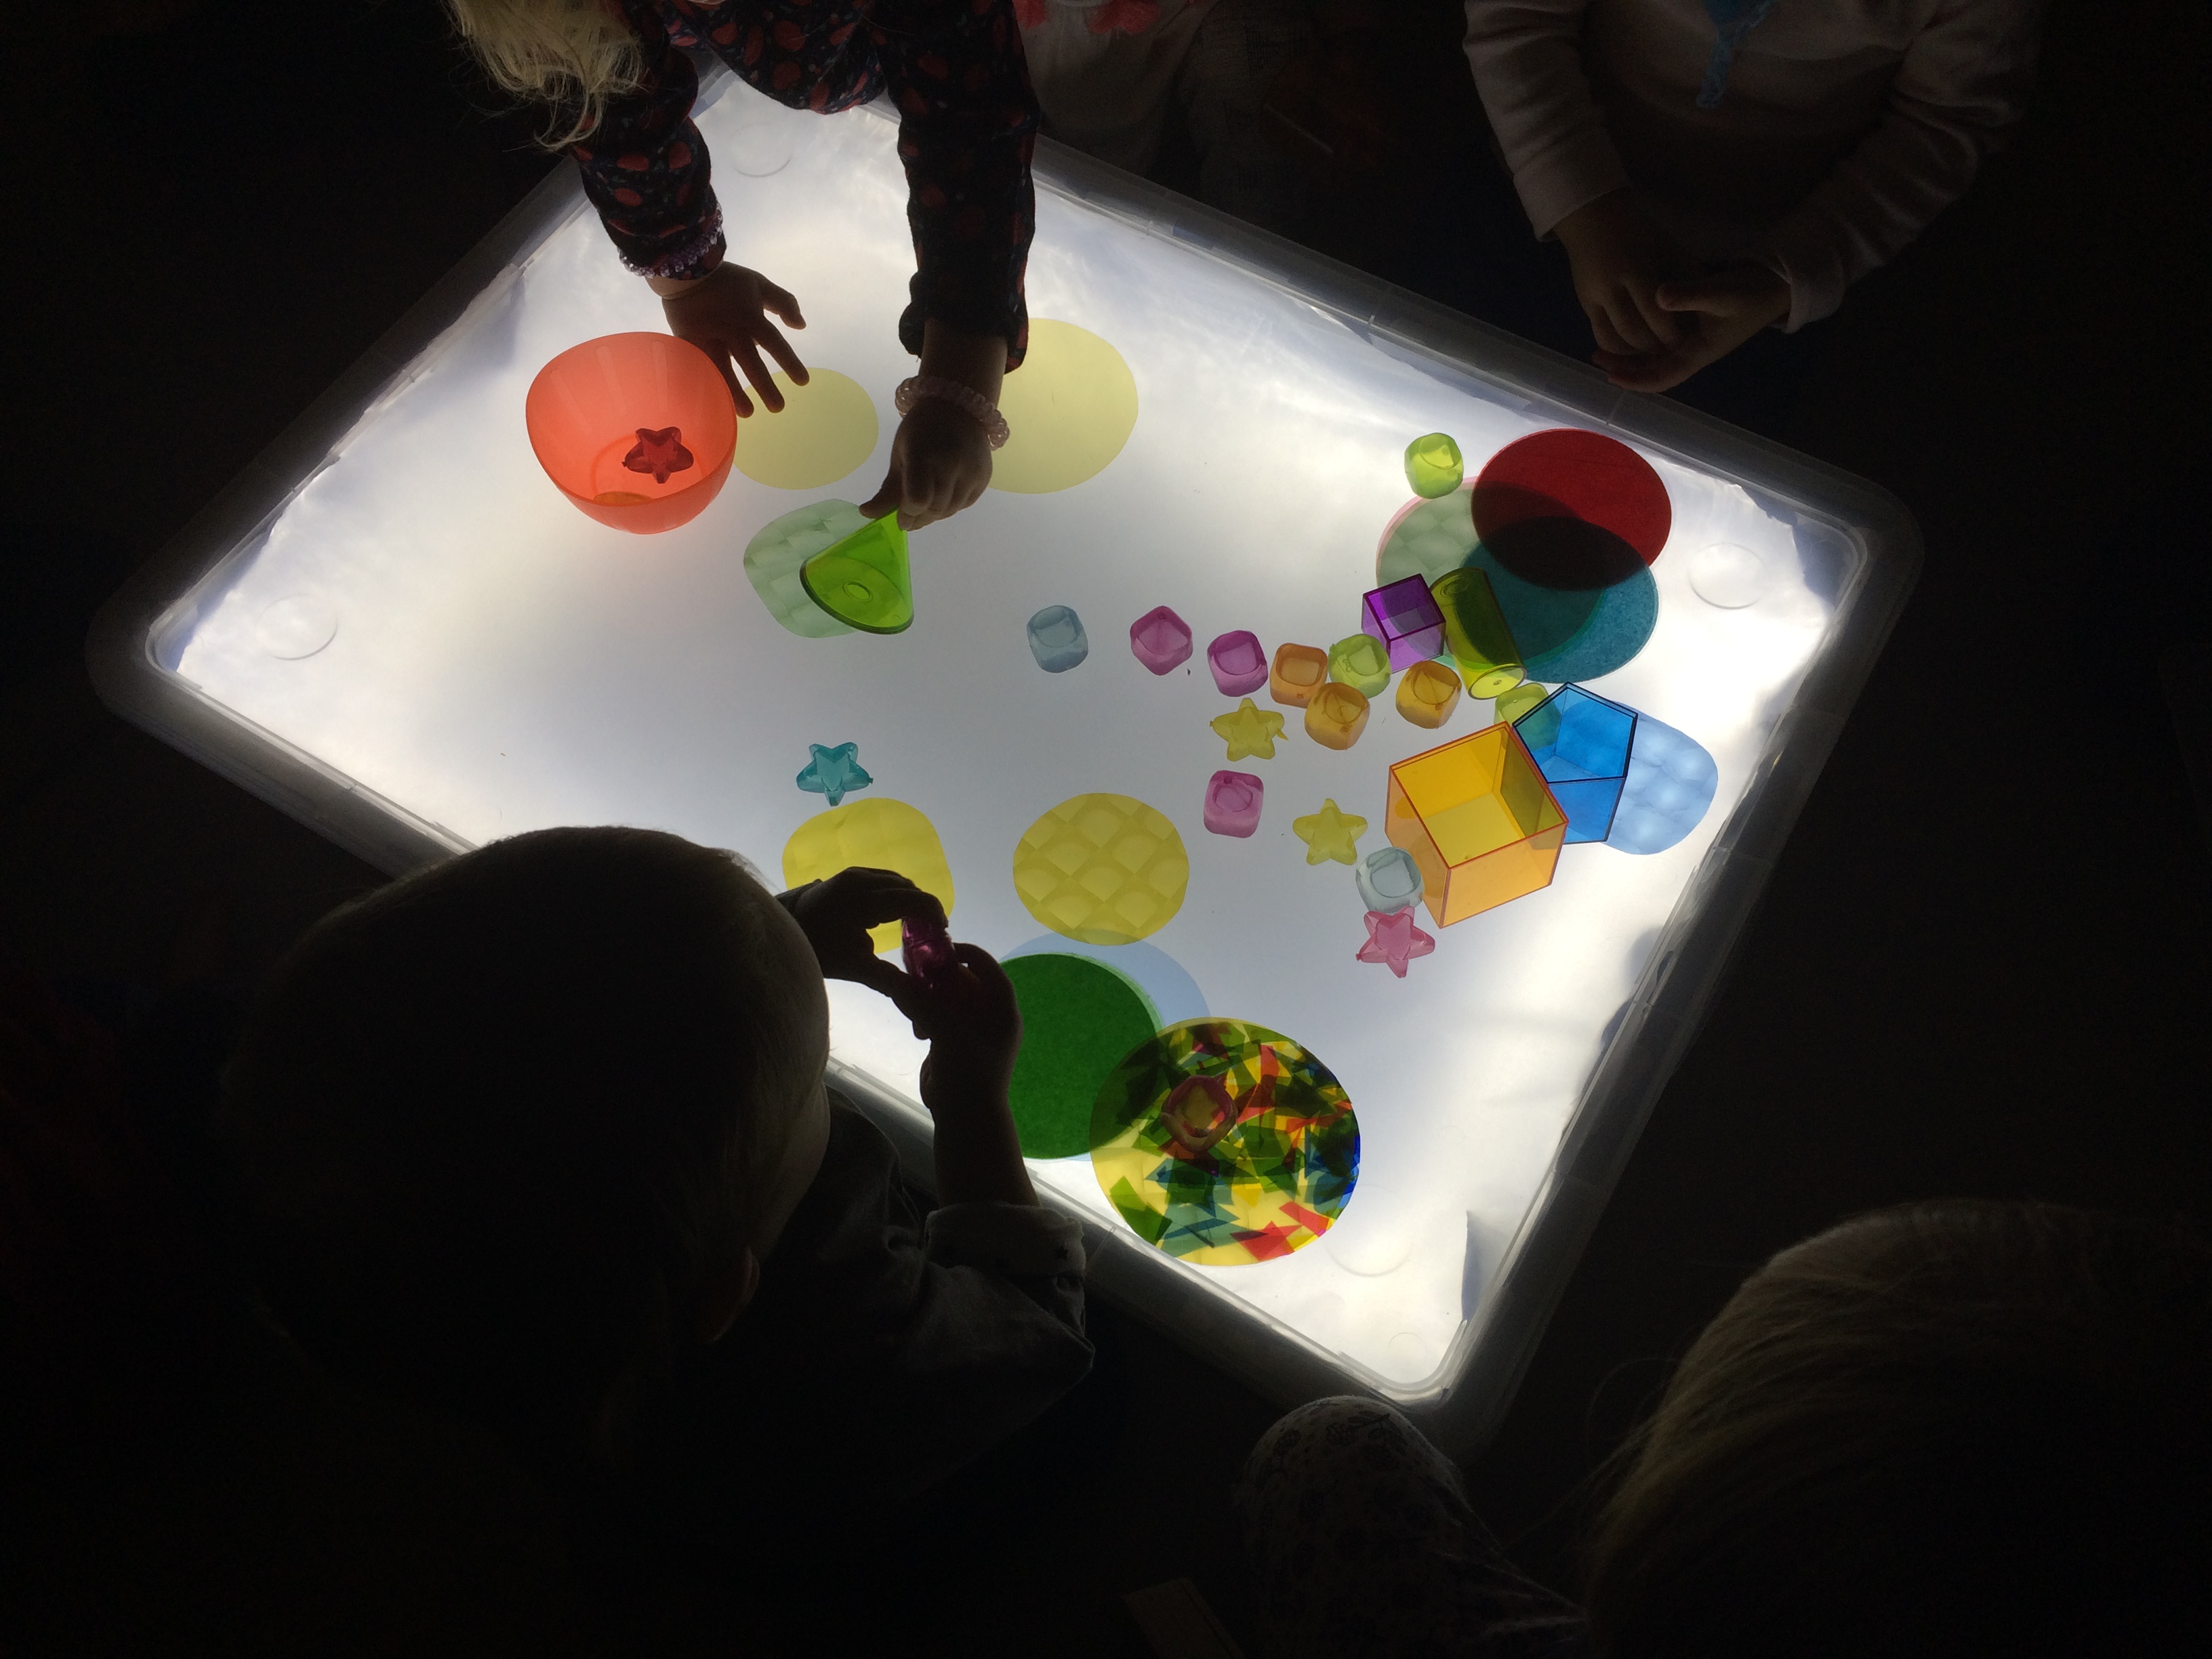 Table lumineuse : les enfants disposent des papiers de formes et couleurs diffentes